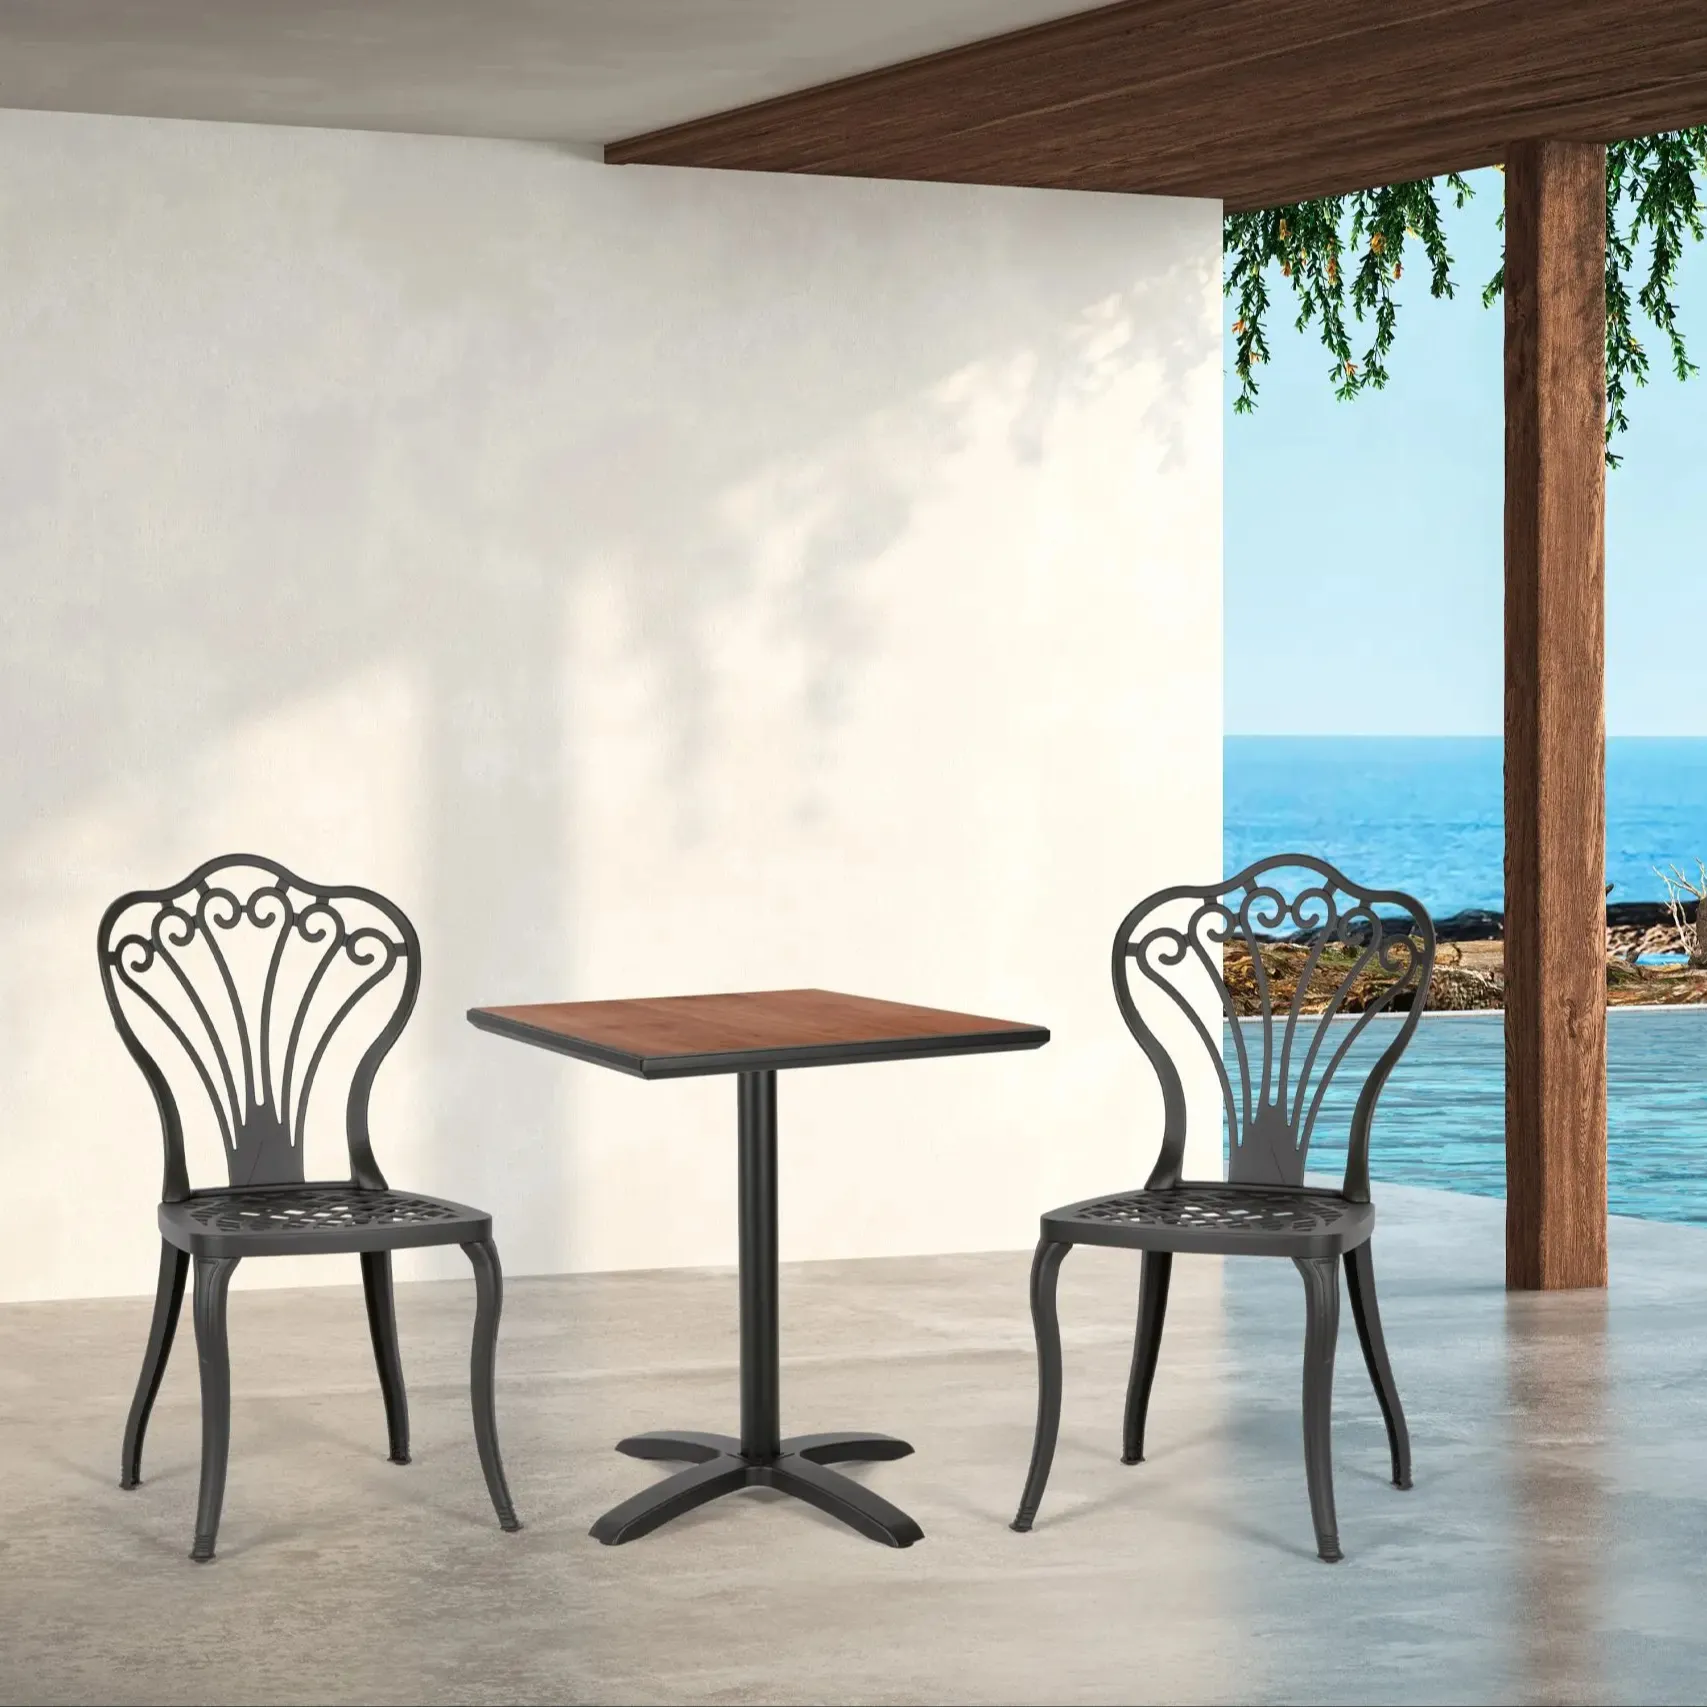 Modern açık sandalye bahçe setleri mobilya açık veranda alüminyum sandalyeler Hpl masa üstü ile restoranlar için kafenin kahve sh